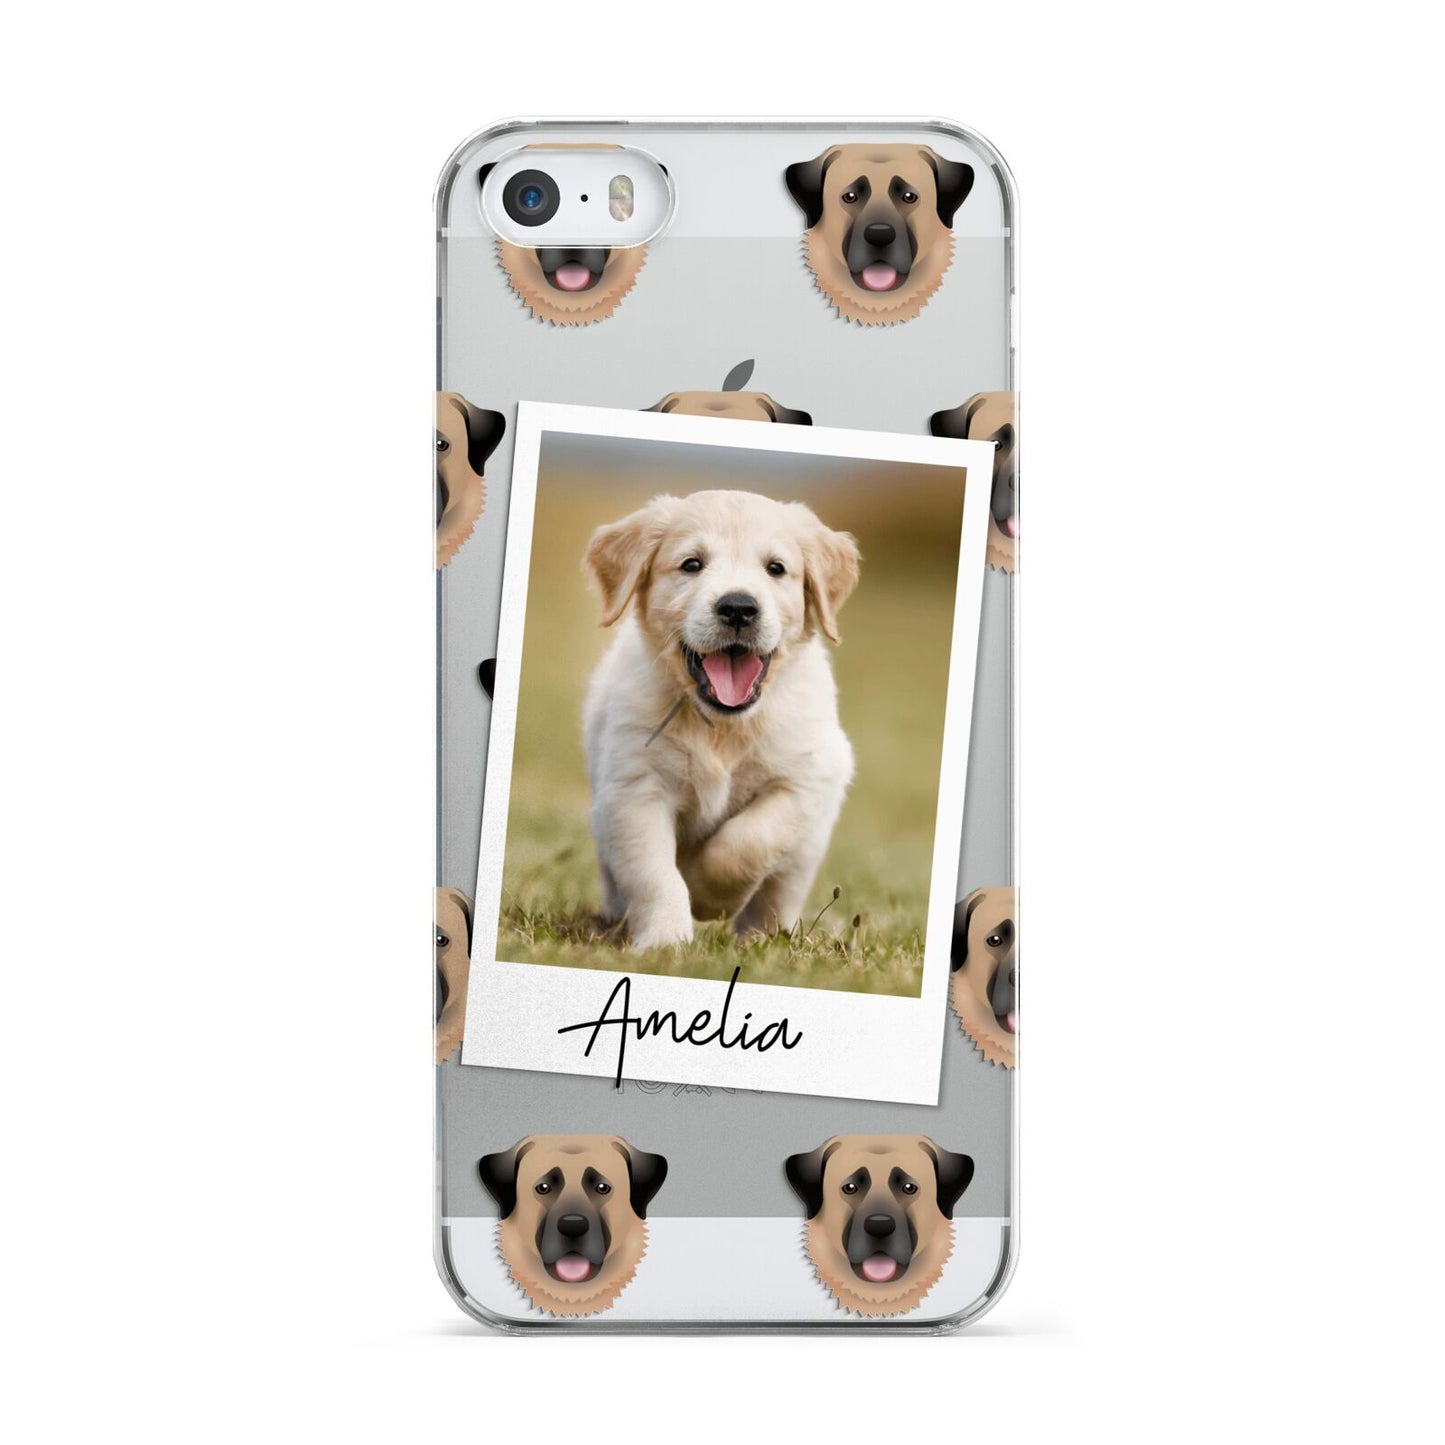 Personalised Dog Photo Apple iPhone 5 Case